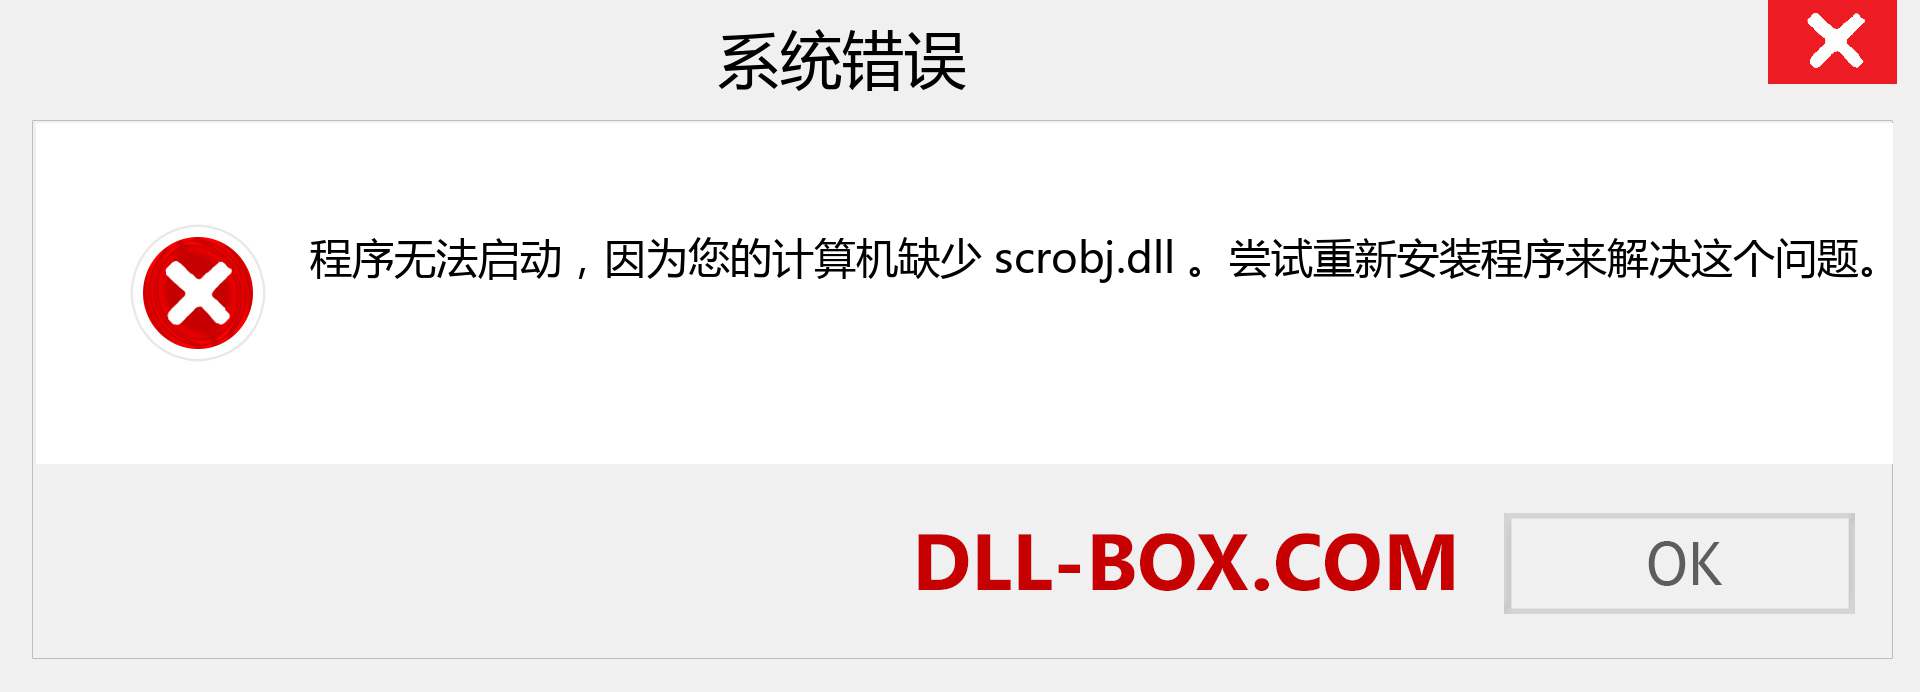 scrobj.dll 文件丢失？。 适用于 Windows 7、8、10 的下载 - 修复 Windows、照片、图像上的 scrobj dll 丢失错误